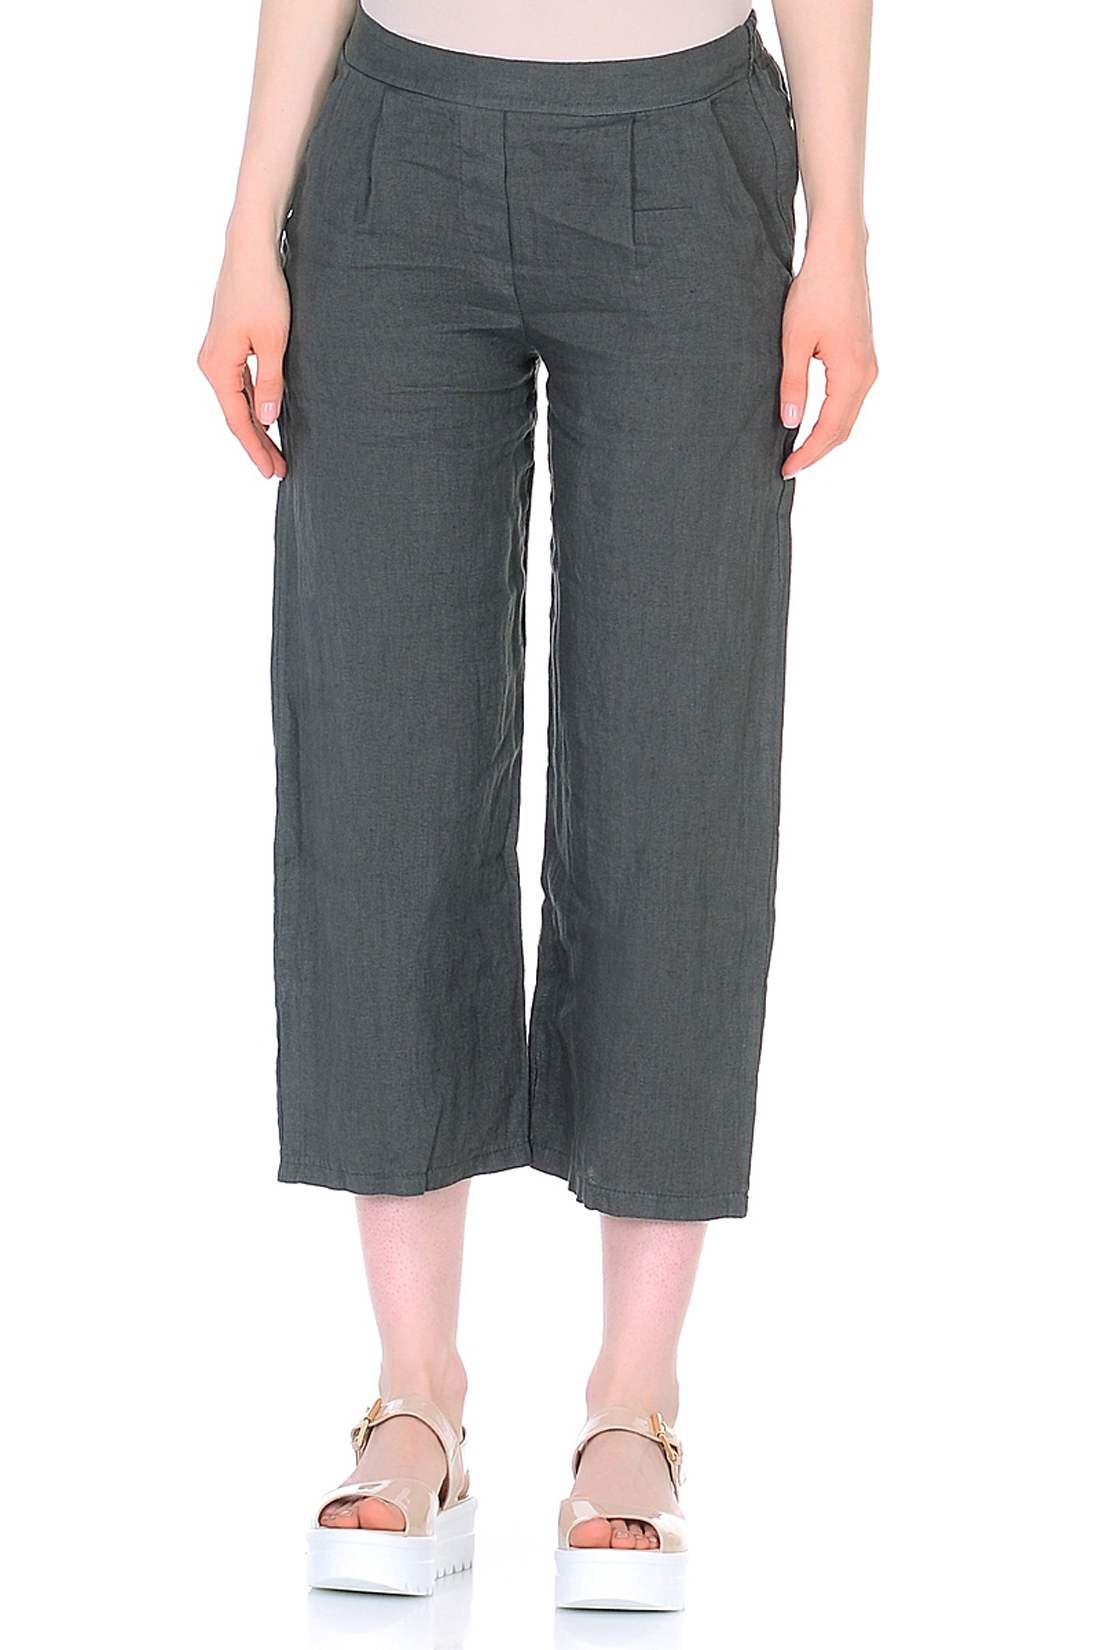 Льняные брюки-кюлоты (арт. baon B298036), размер L, цвет серый Льняные брюки-кюлоты (арт. baon B298036) - фото 1